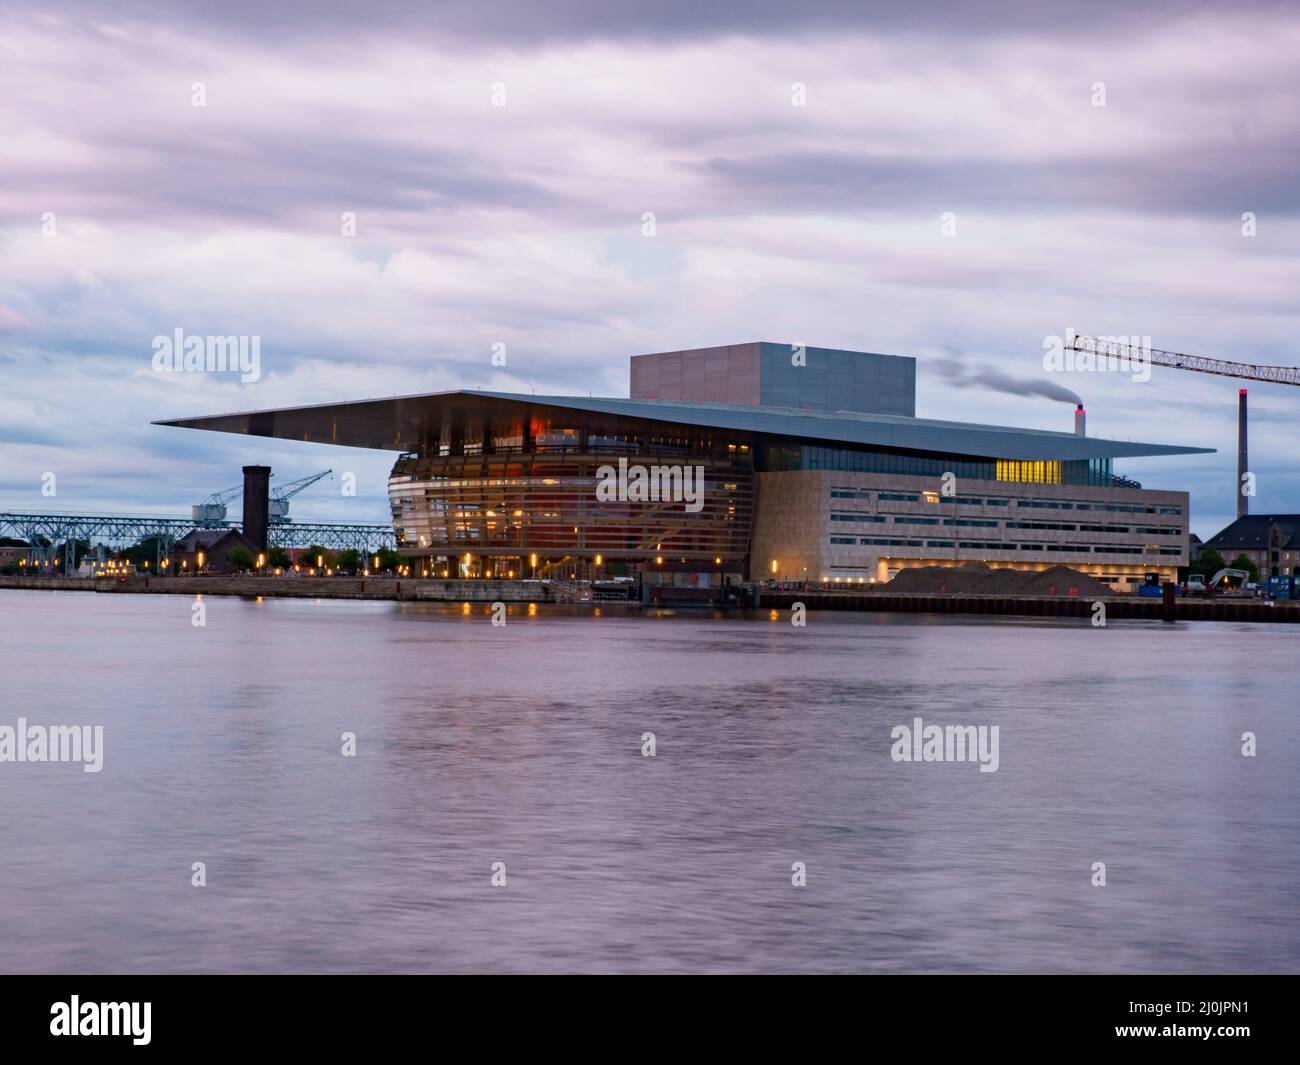 Kopenhagen, Dänemark - Juli, 2021: Das Kopenhagener Opernhaus ist das nationale Opernhaus Dänemarks und gehört zu den modernsten Opernhäusern im wo Stockfoto